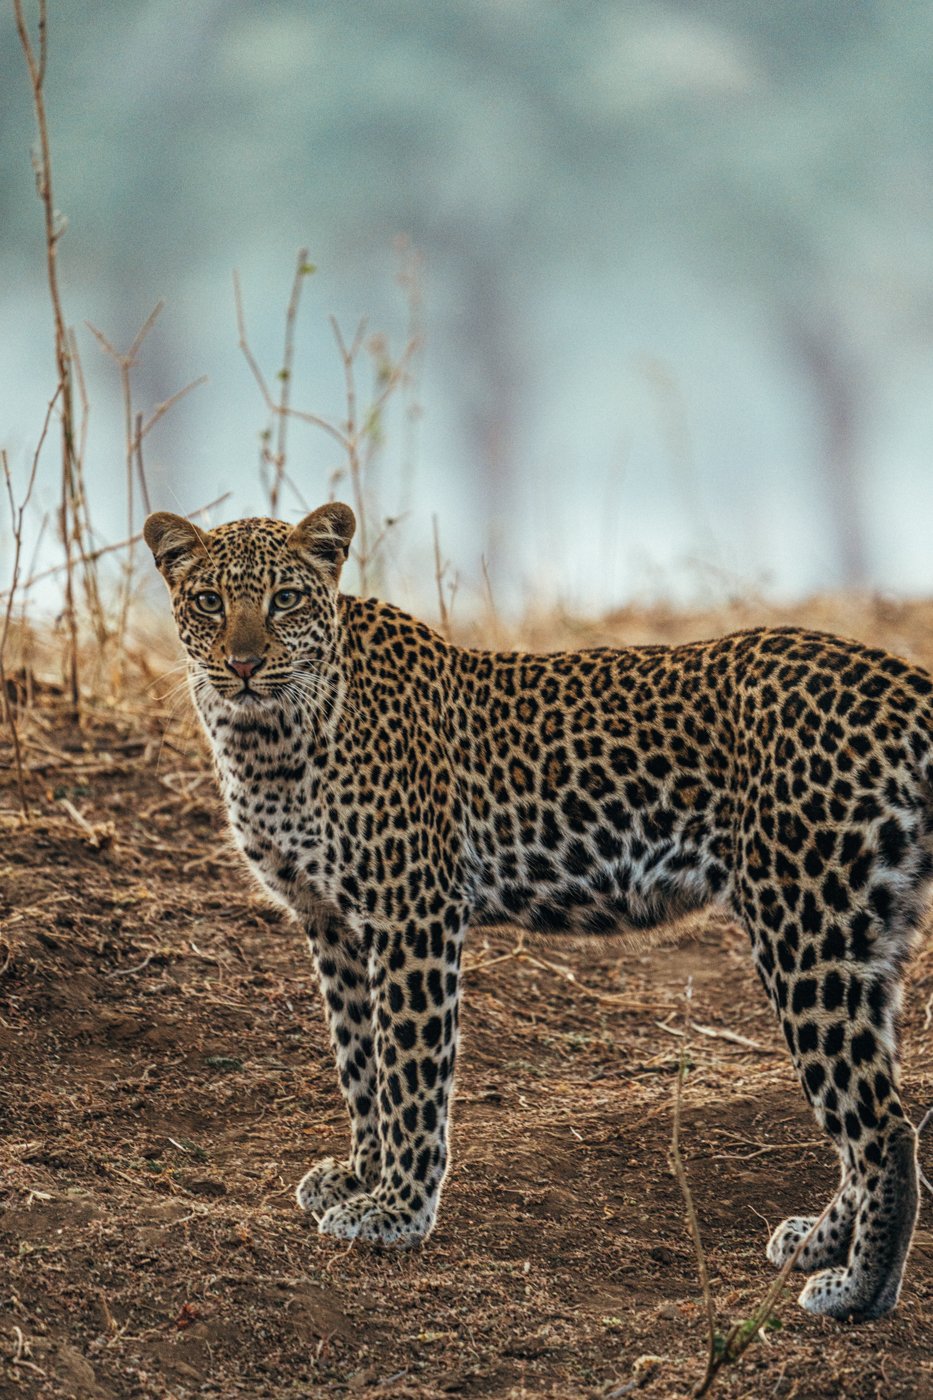 Lower Zambezi National Park's wildlife